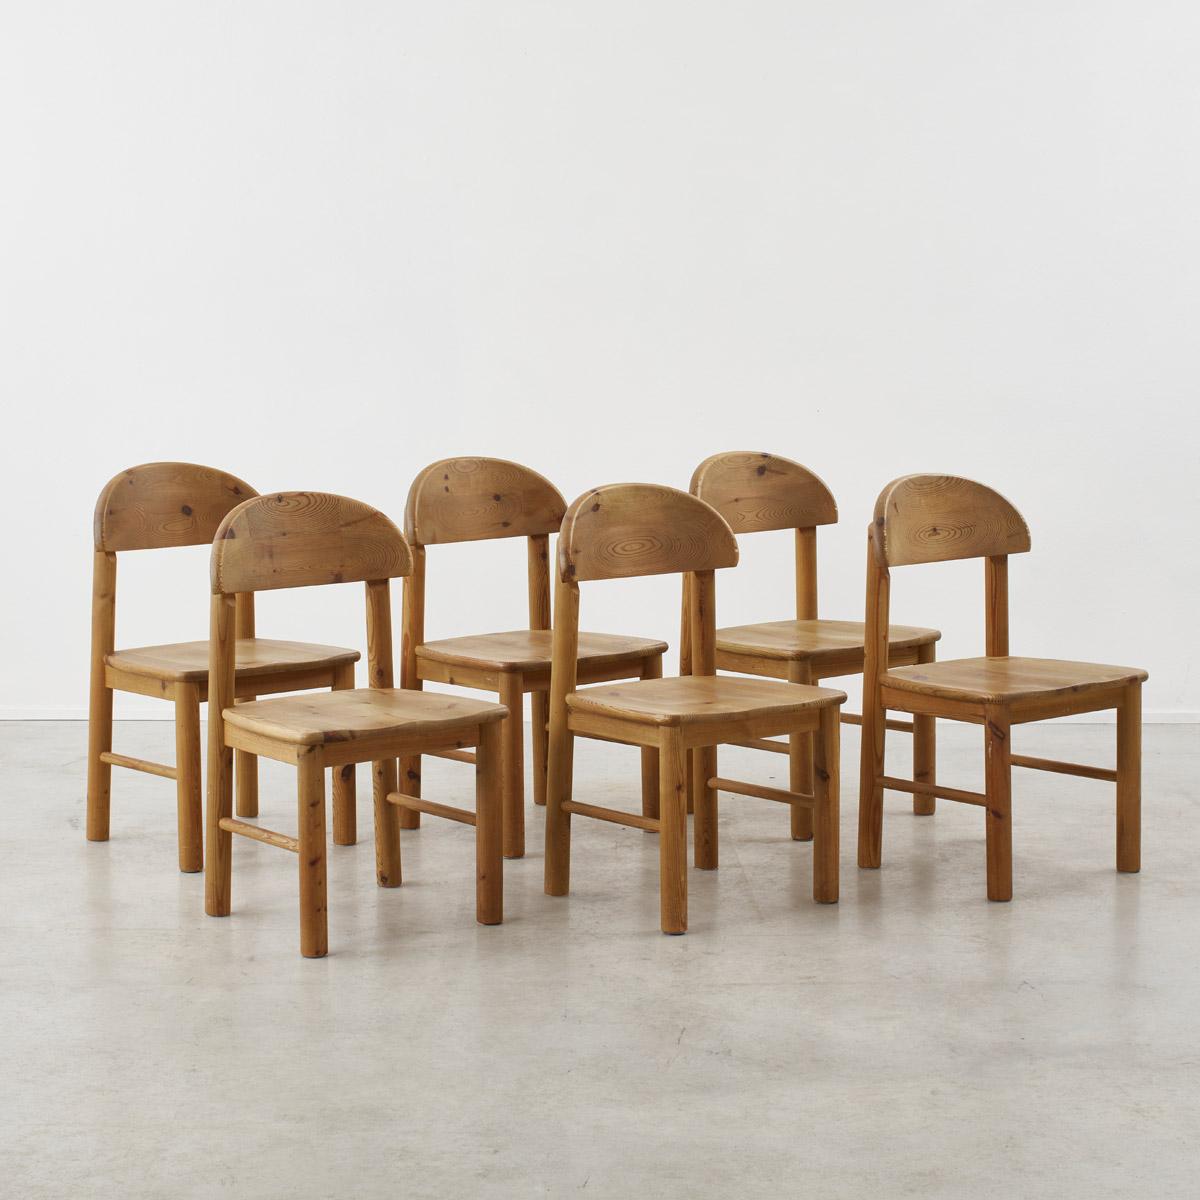 S'inspirant du tabouret de traite traditionnel danois, le designer Rainer Daumiller a soigneusement équilibré le design et le confort. Le siège, imitant celui du tabouret sculpté, est conçu pour soutenir la personne assise, avec un dossier incliné